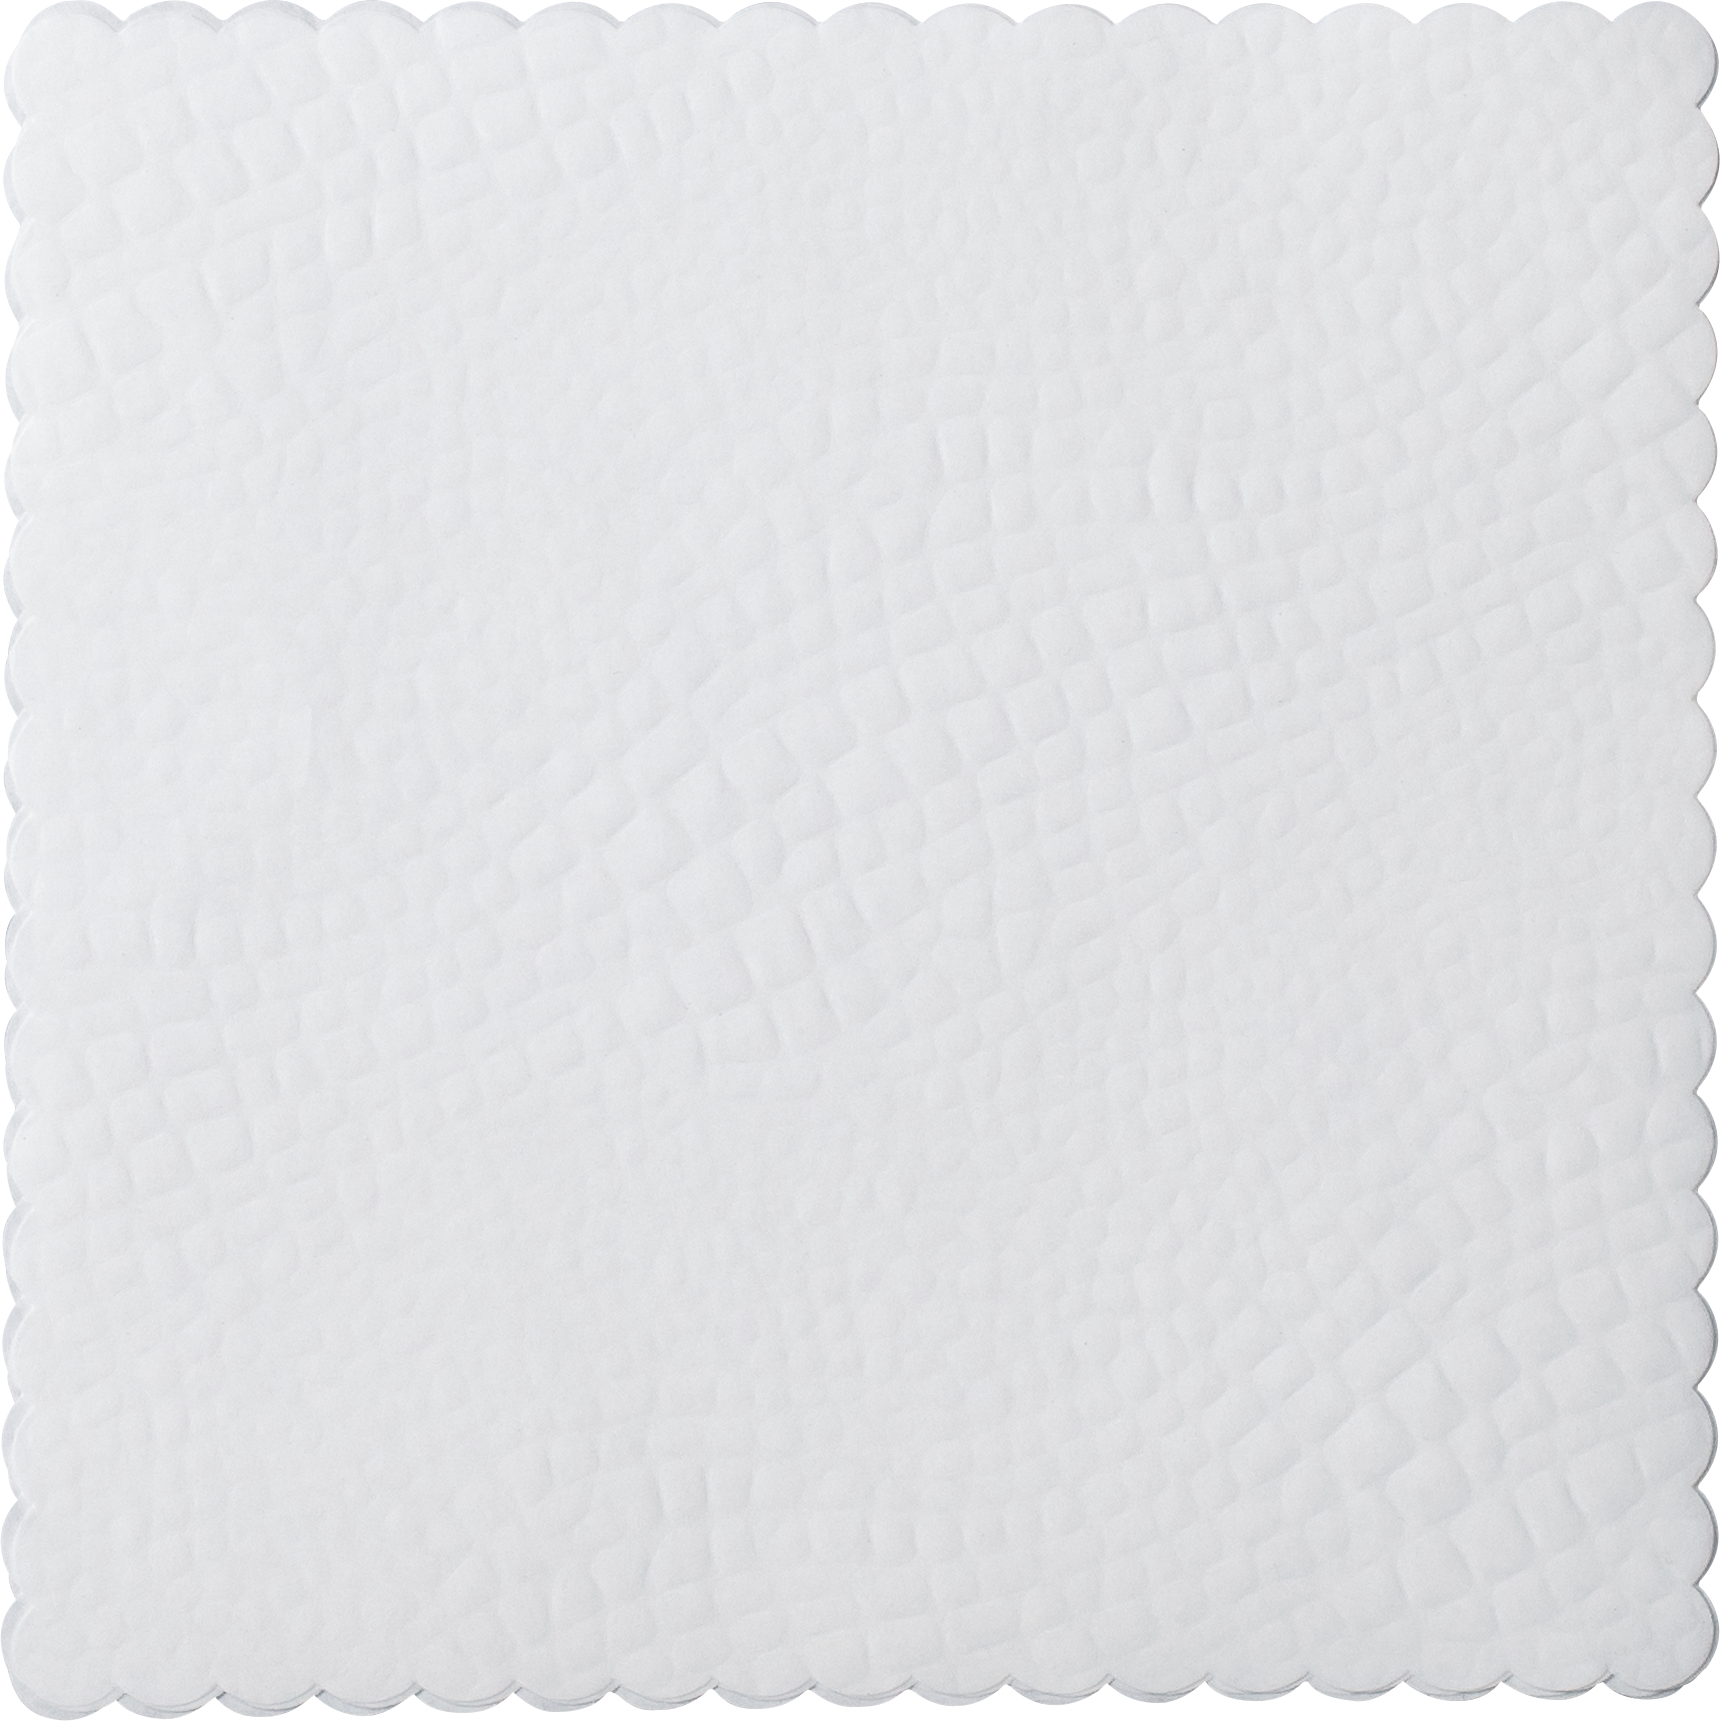 Croco dish paper square, 18 x 18cm